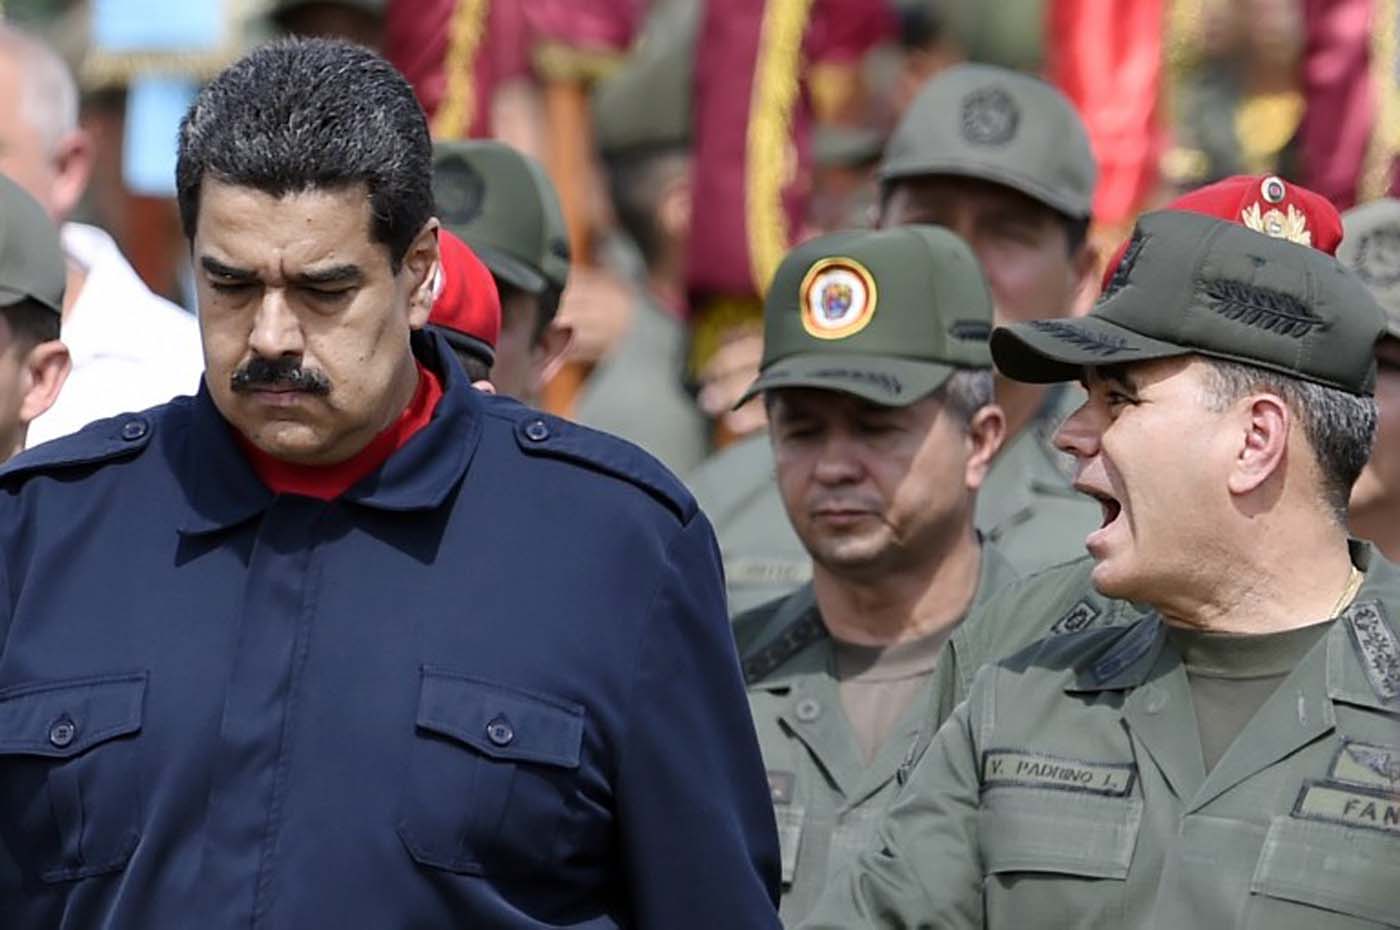 La crisis nacional, popularidad de Maduro y Padrino, la caída del socialismo y más (encuesta Keller)